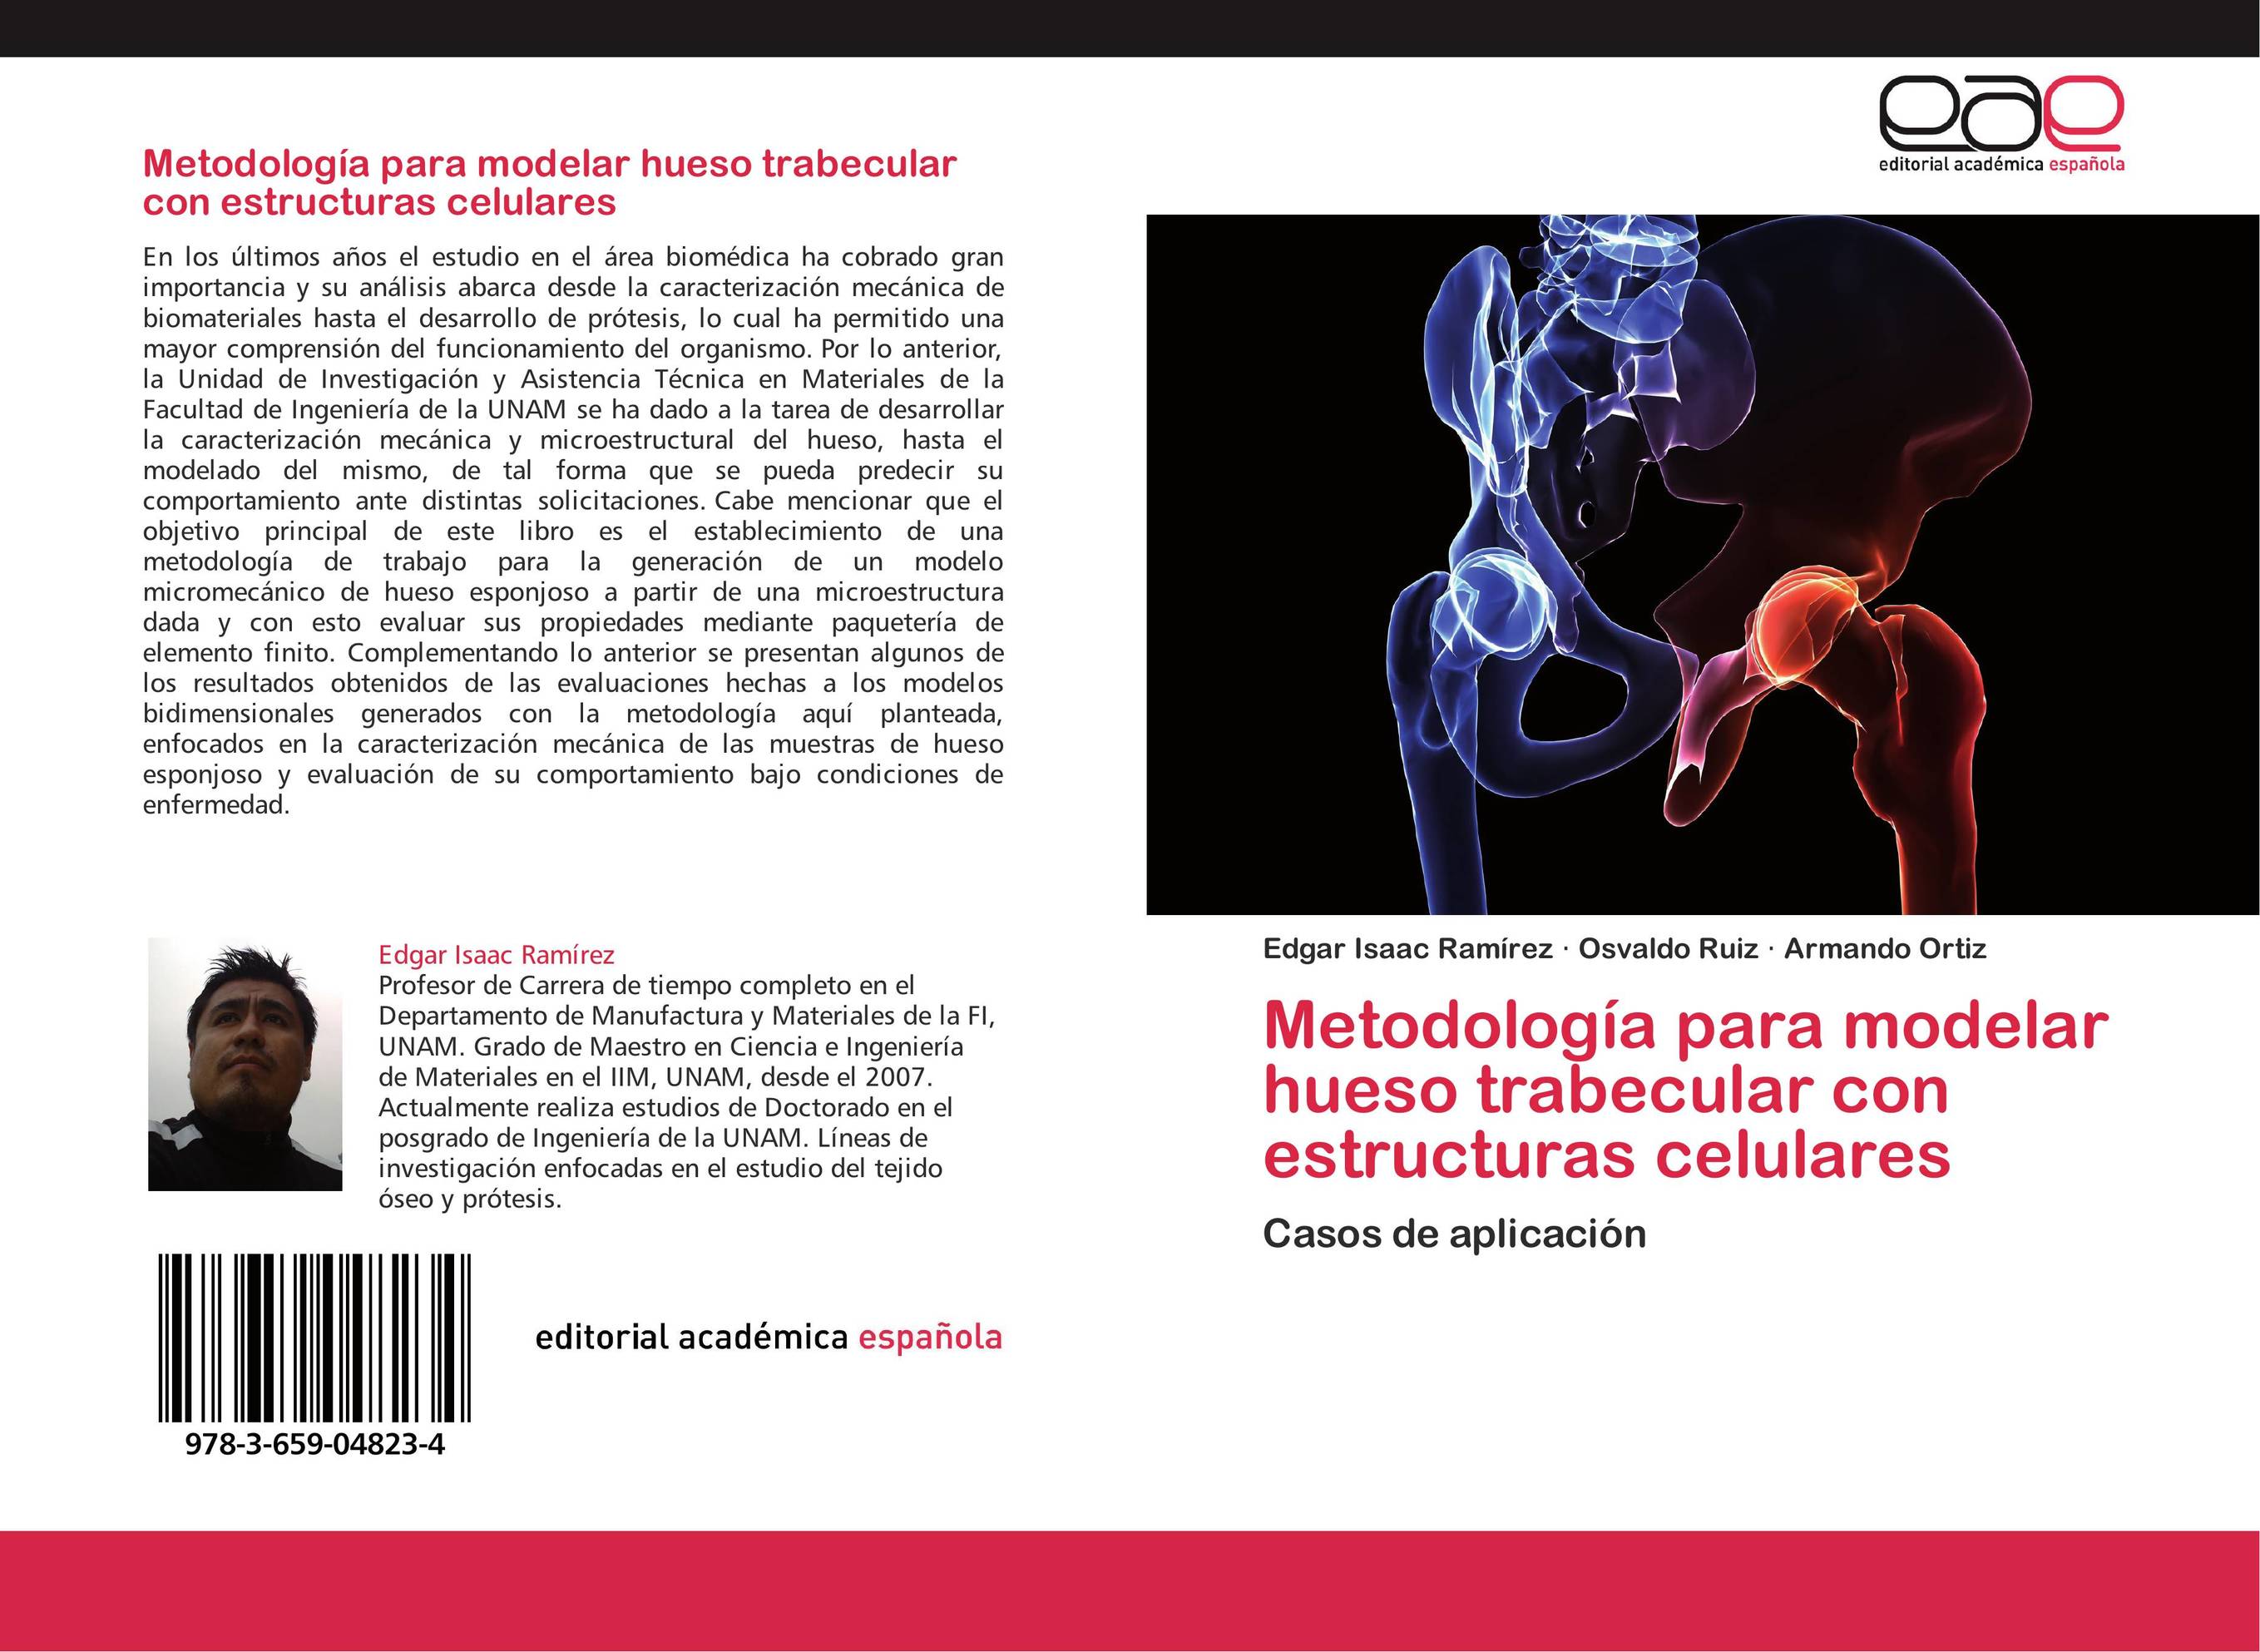 Metodología para modelar hueso trabecular con estructuras celulares